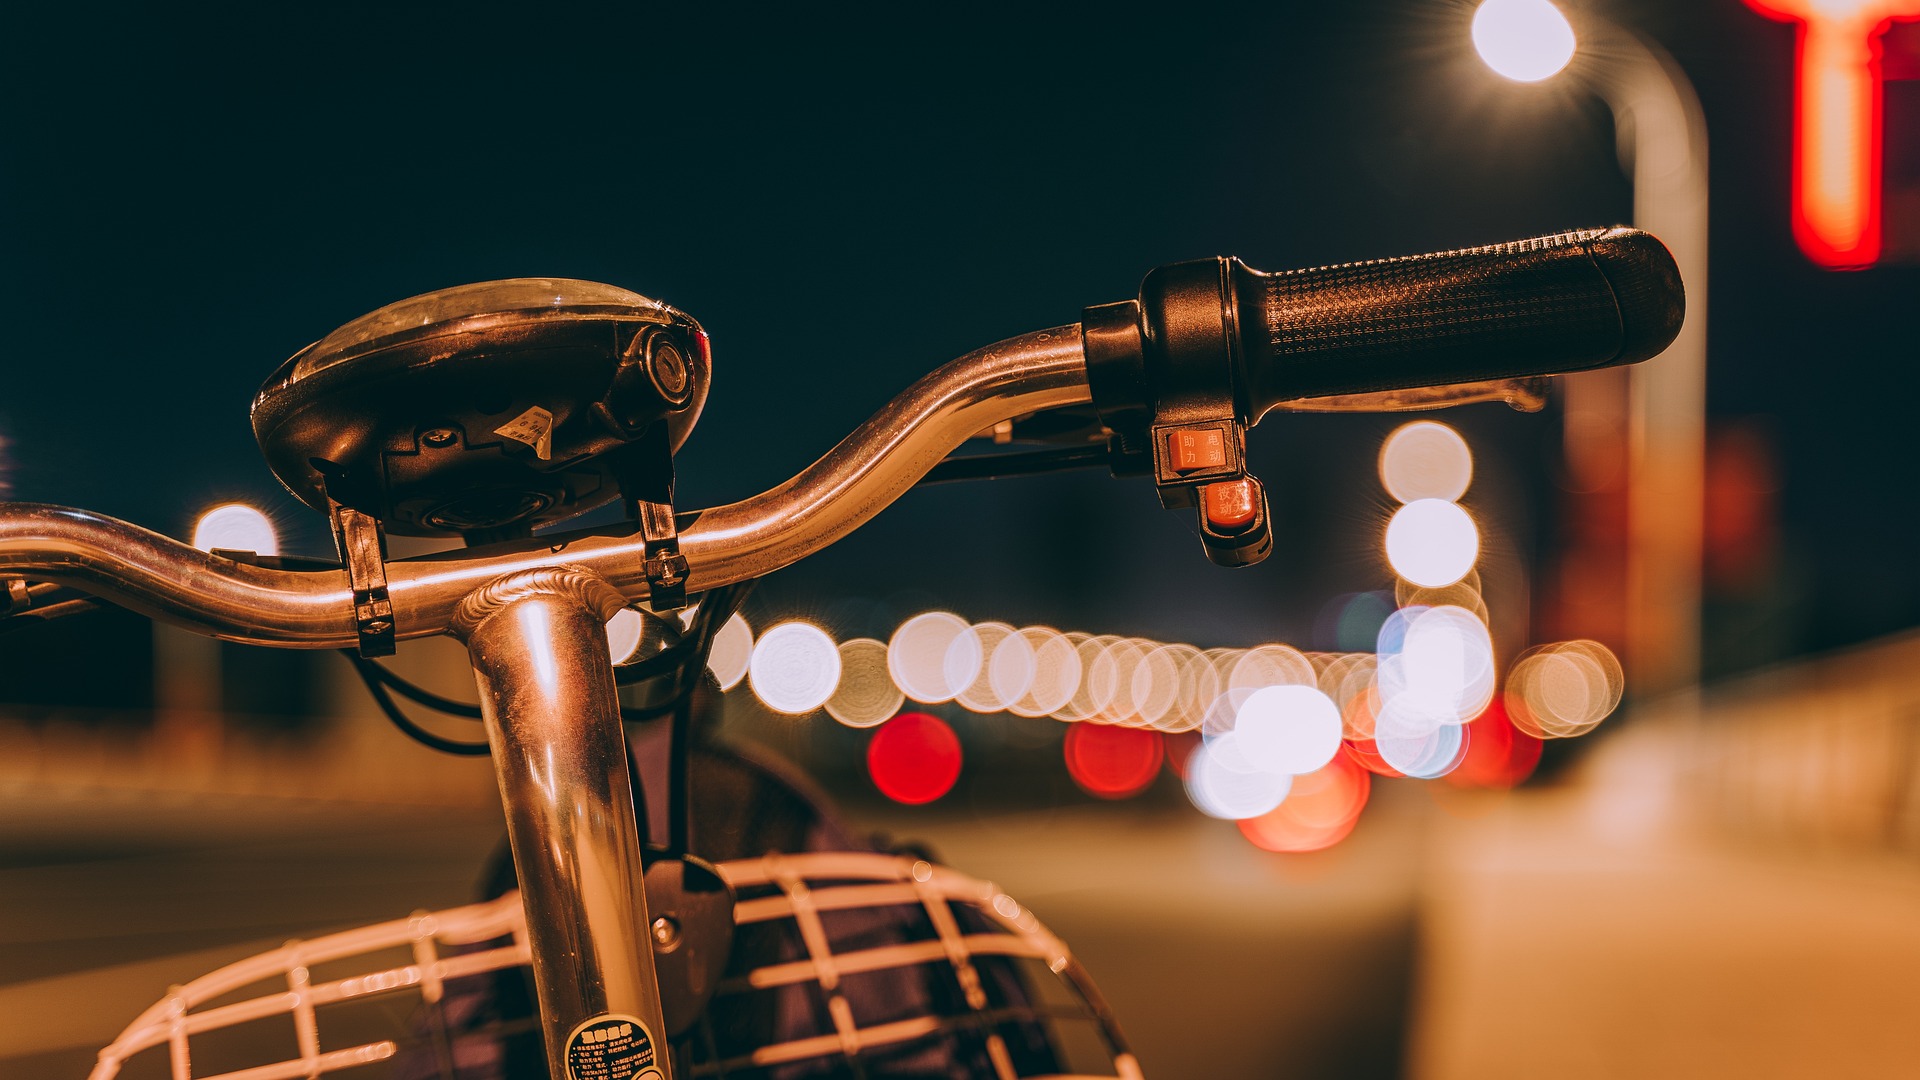 ‘AAN in het donker!’: goede fietsverlichting voorkomt ongelukken